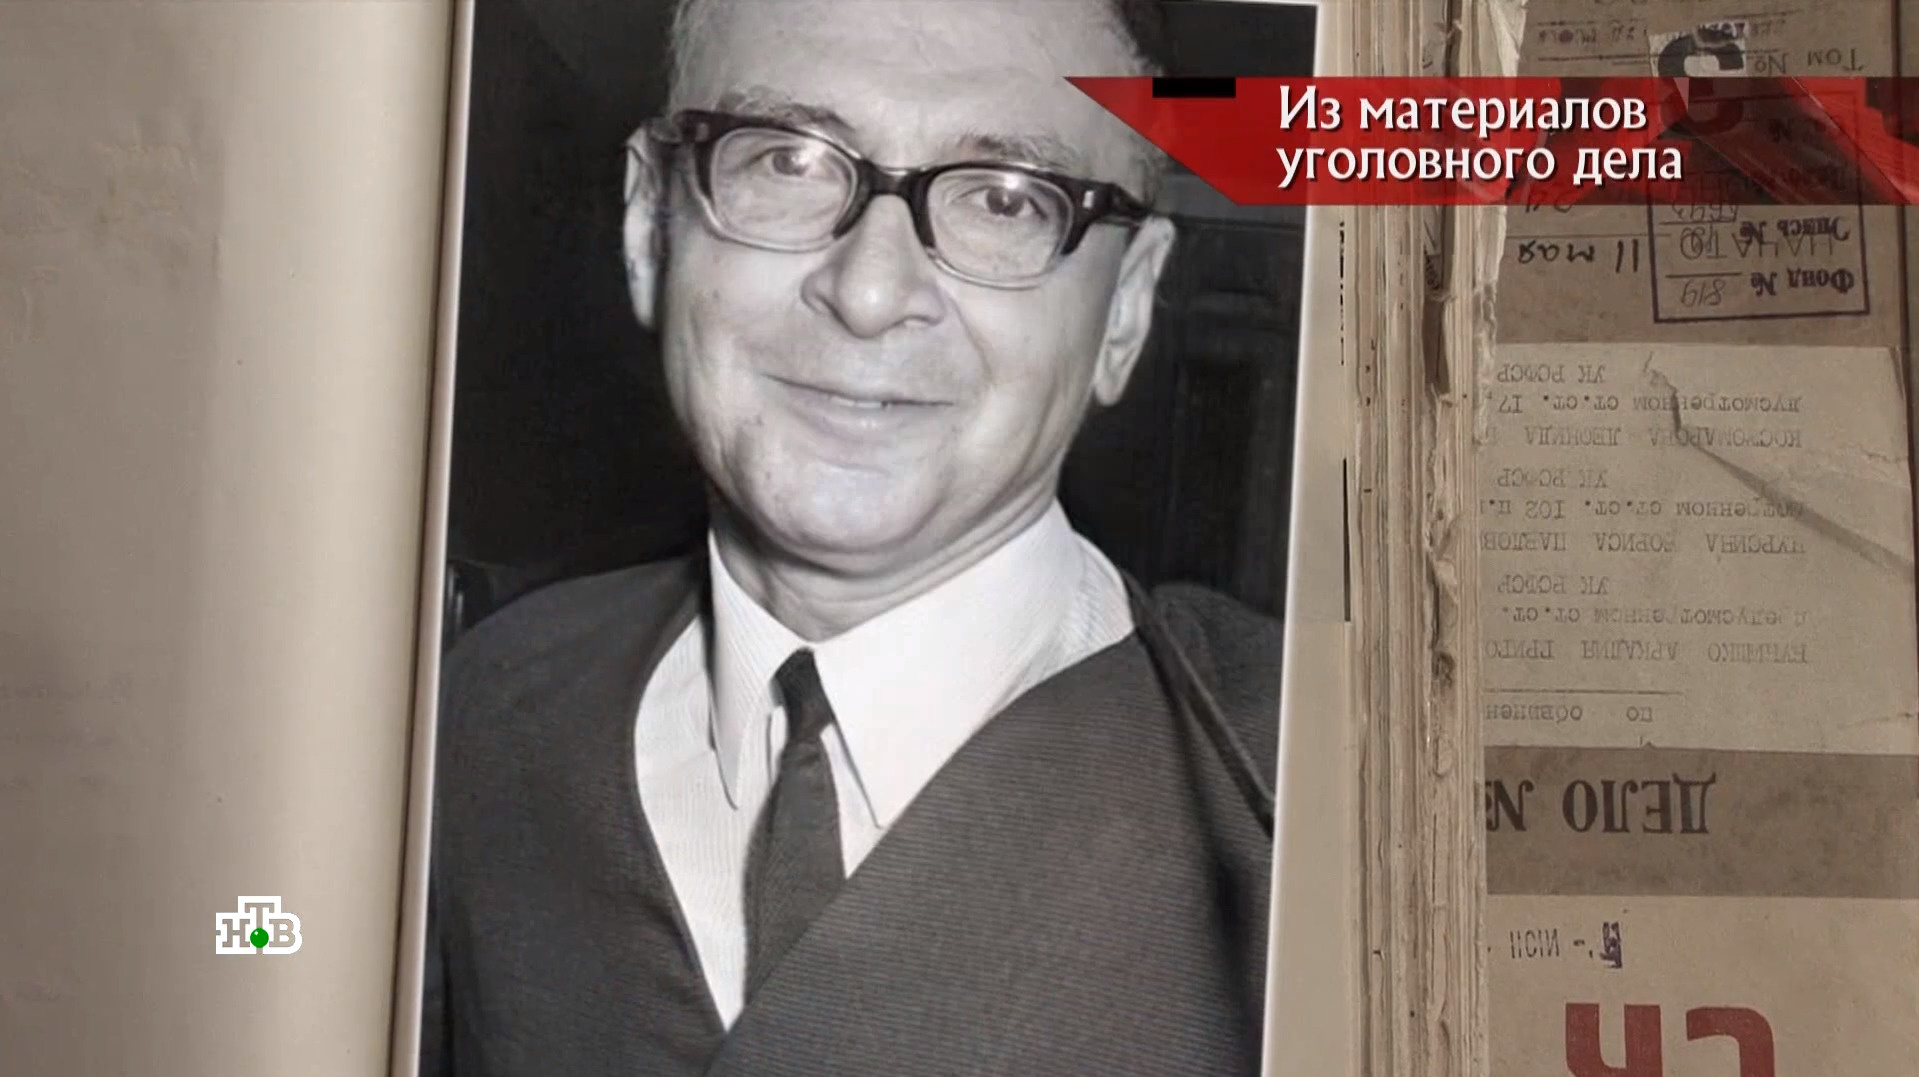 Геннадий Гаспаров — отец похищенного ребенка